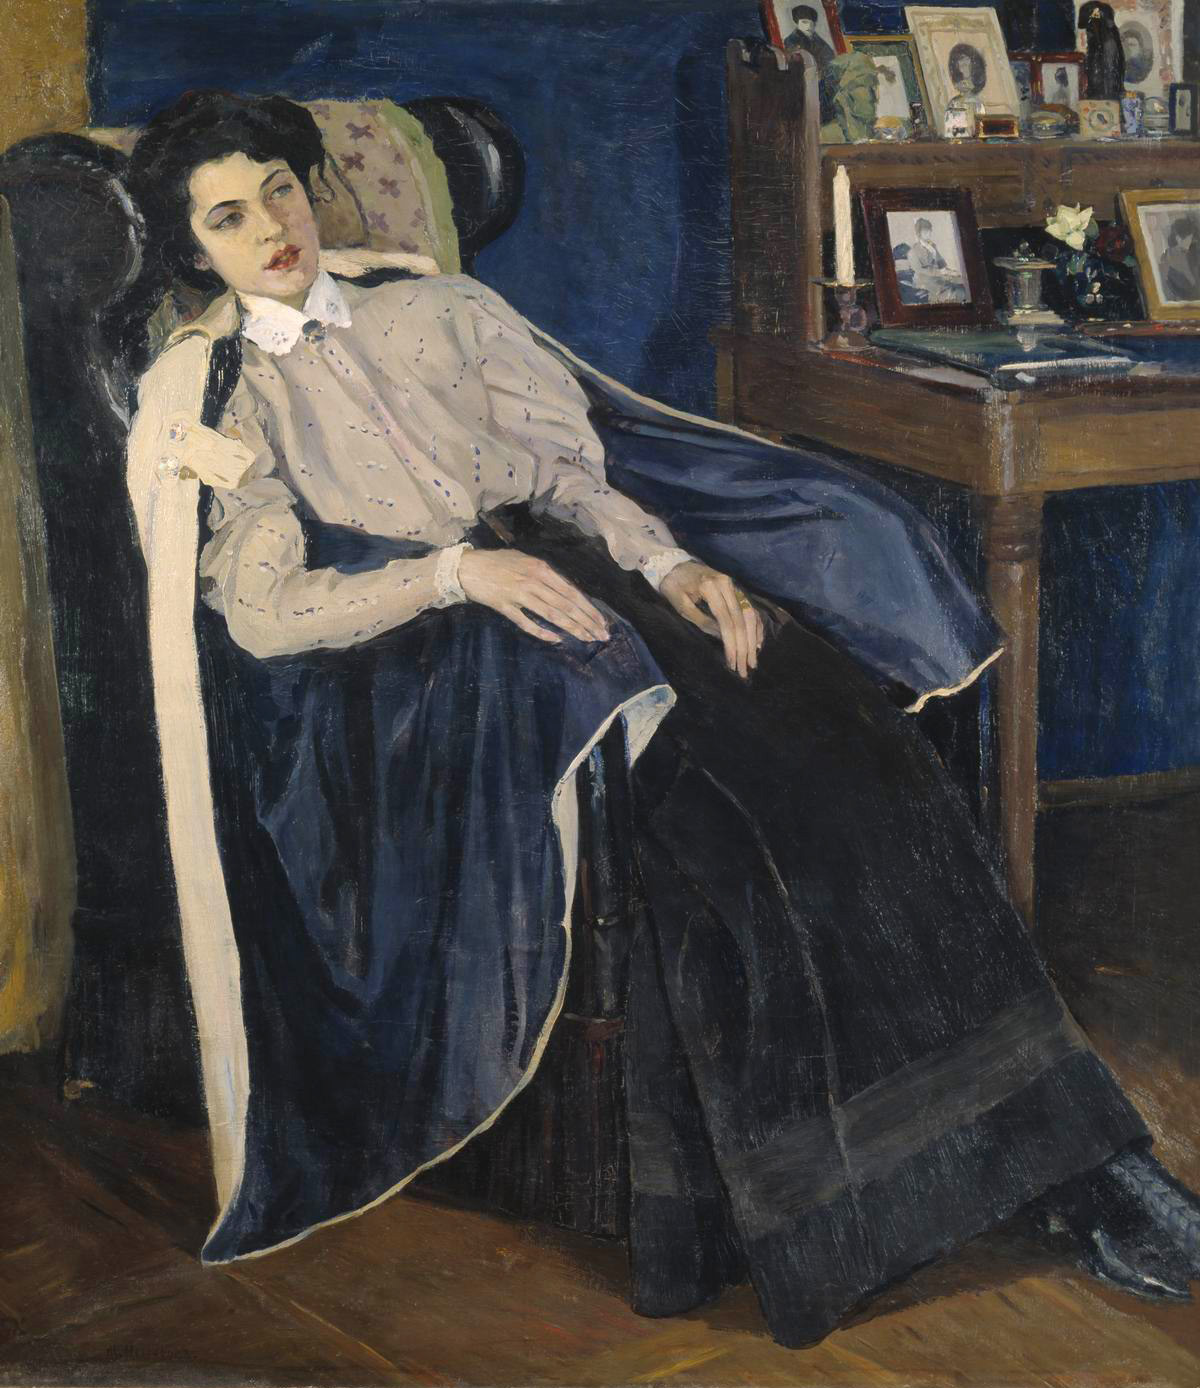 Нестеров М.. Портрет О.М.Нестеровой, дочери художника. 1905